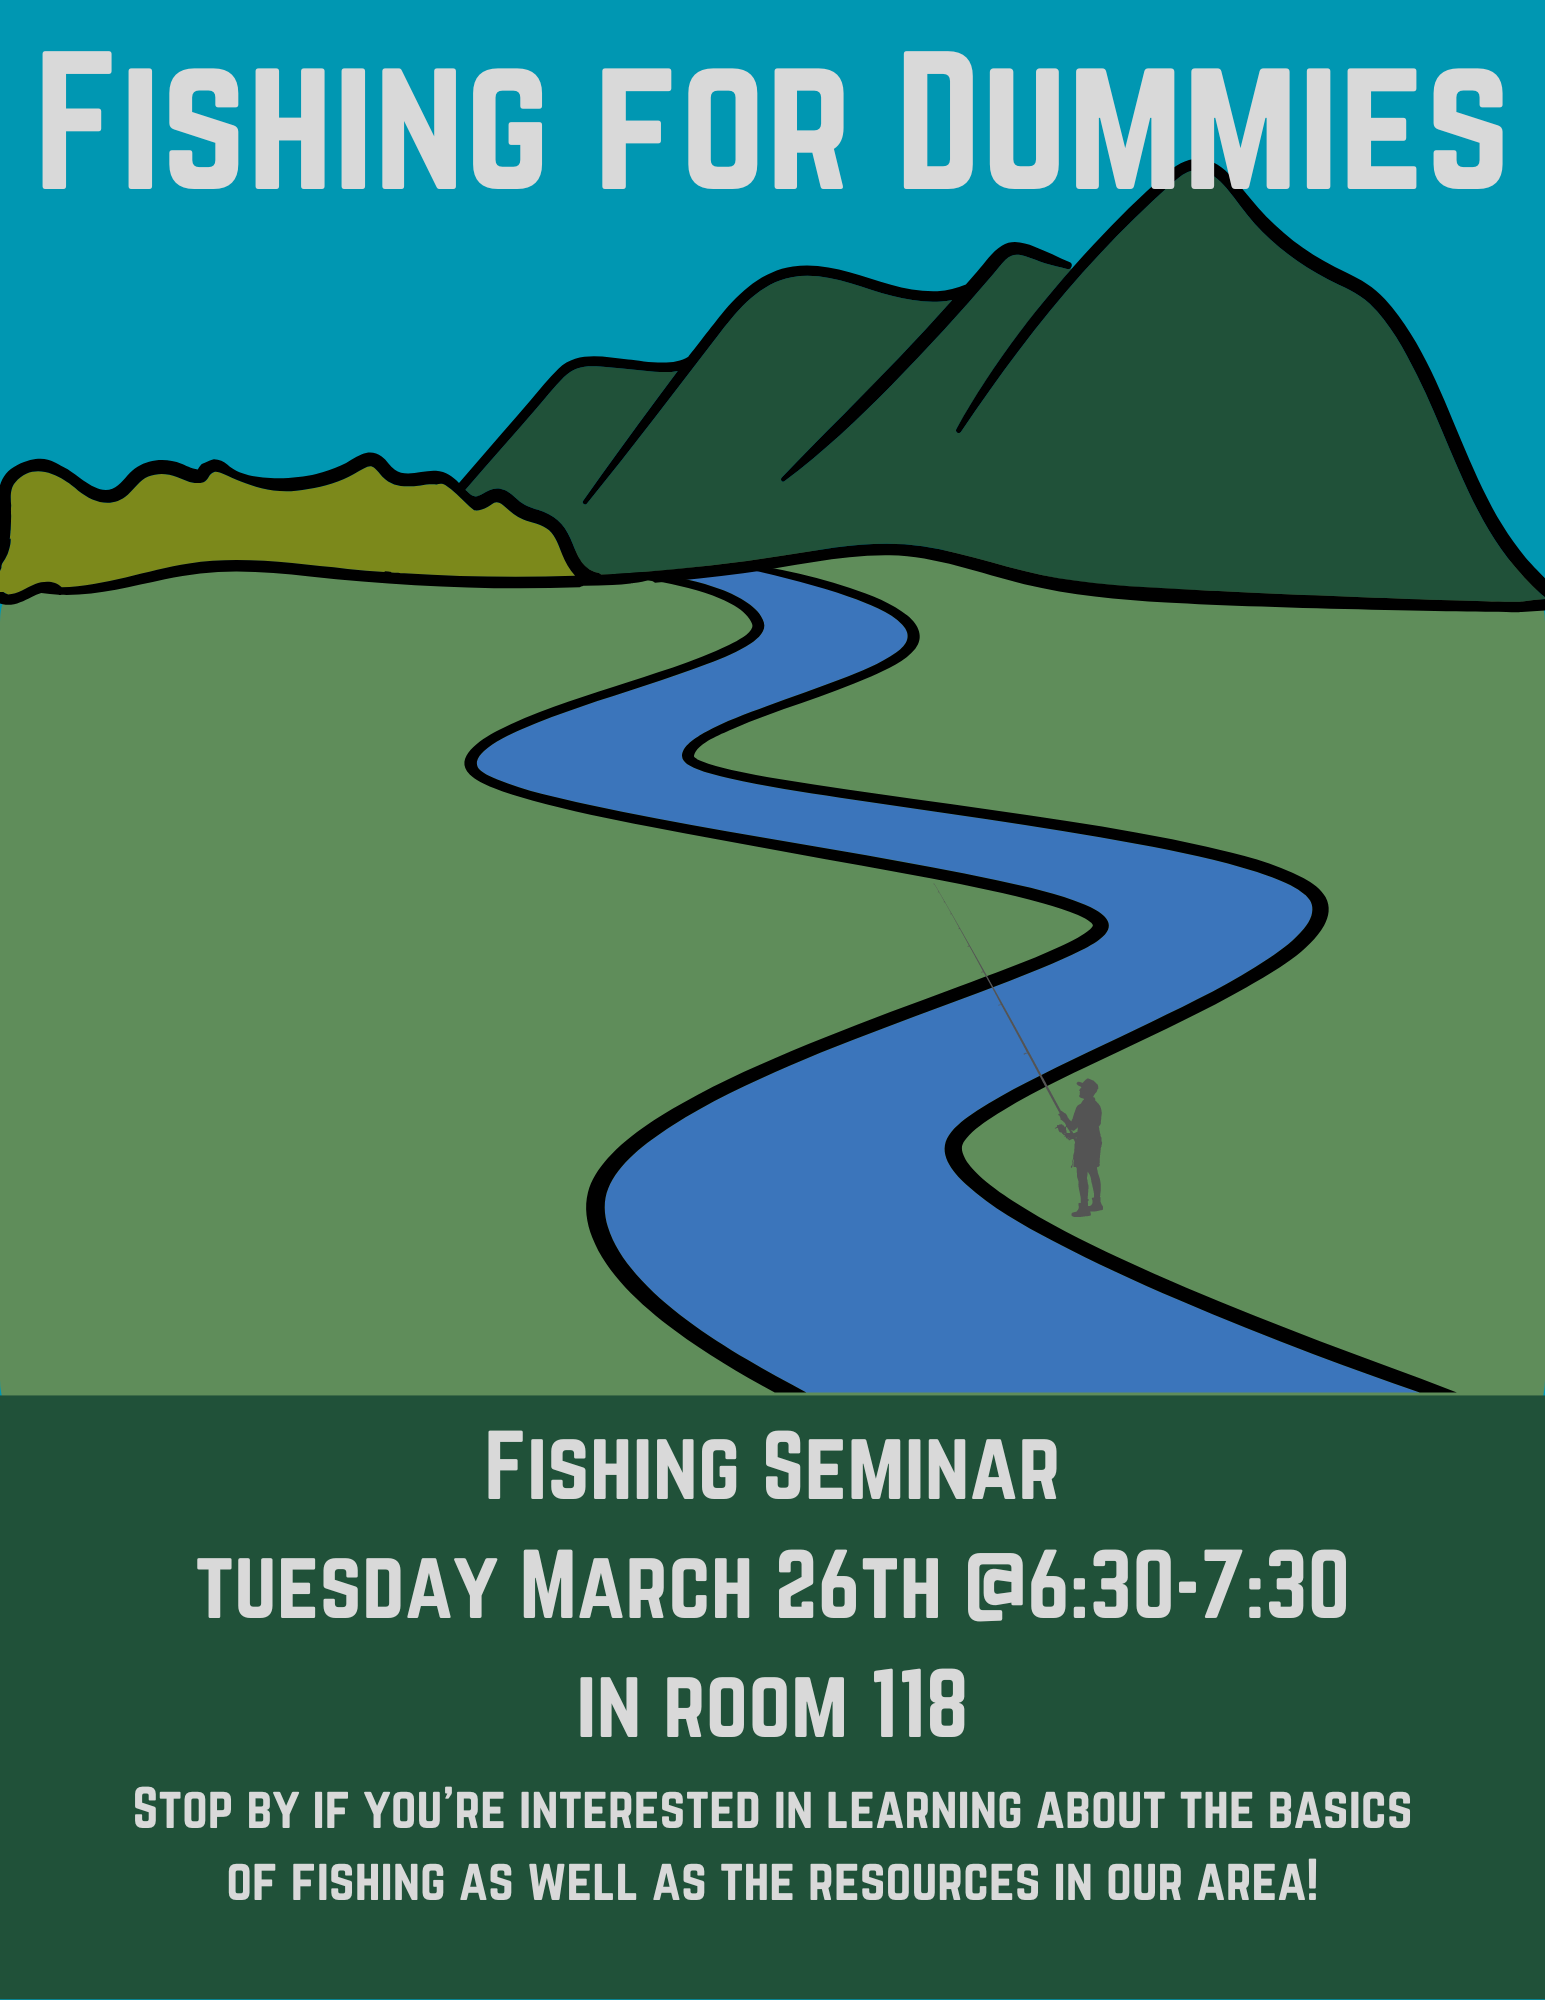 Fishing Seminar flyer